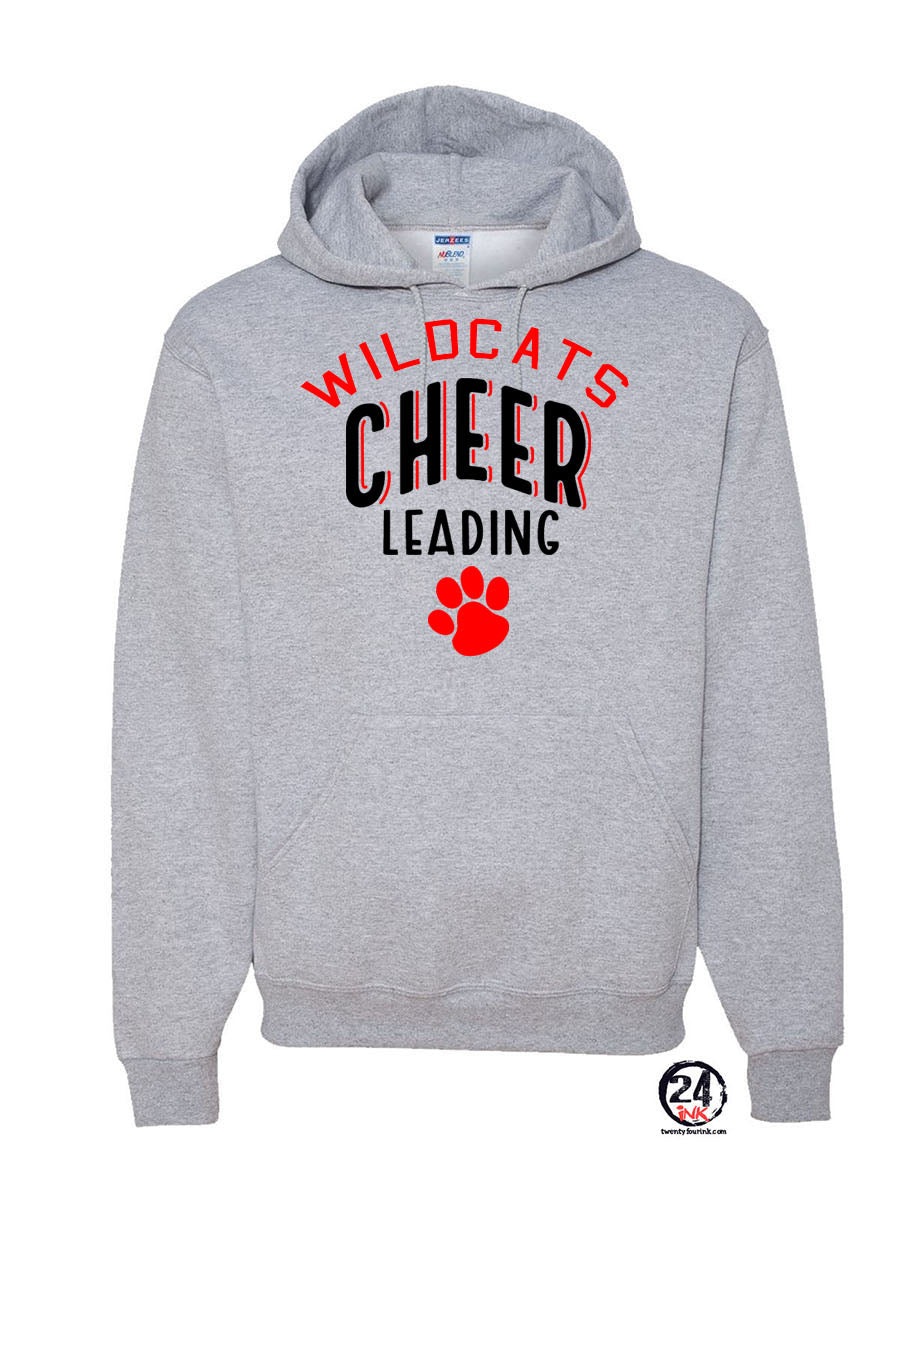 Wildcats cheer Design 5 Hooded Sweatshirt